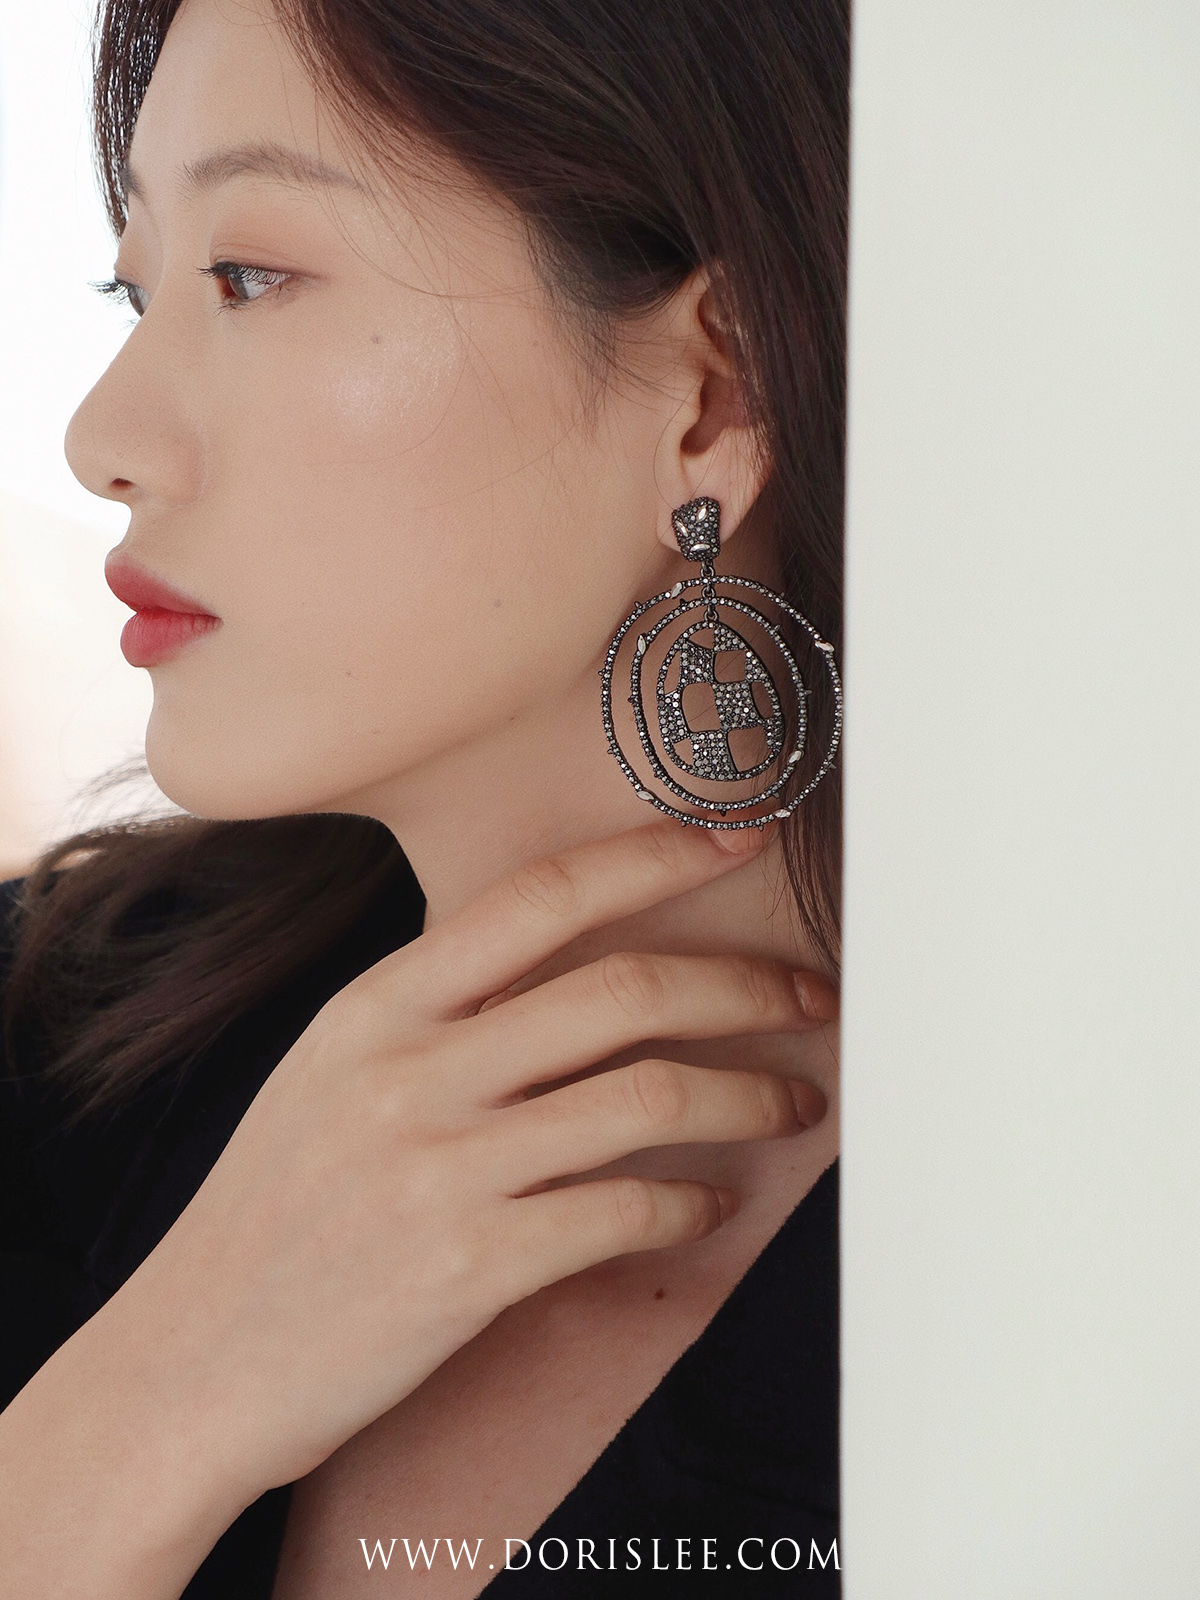 韓國BER~歐美設計師 小眾原創夸張金屬超大耳環圓形流蘇暗黑復古金屬風